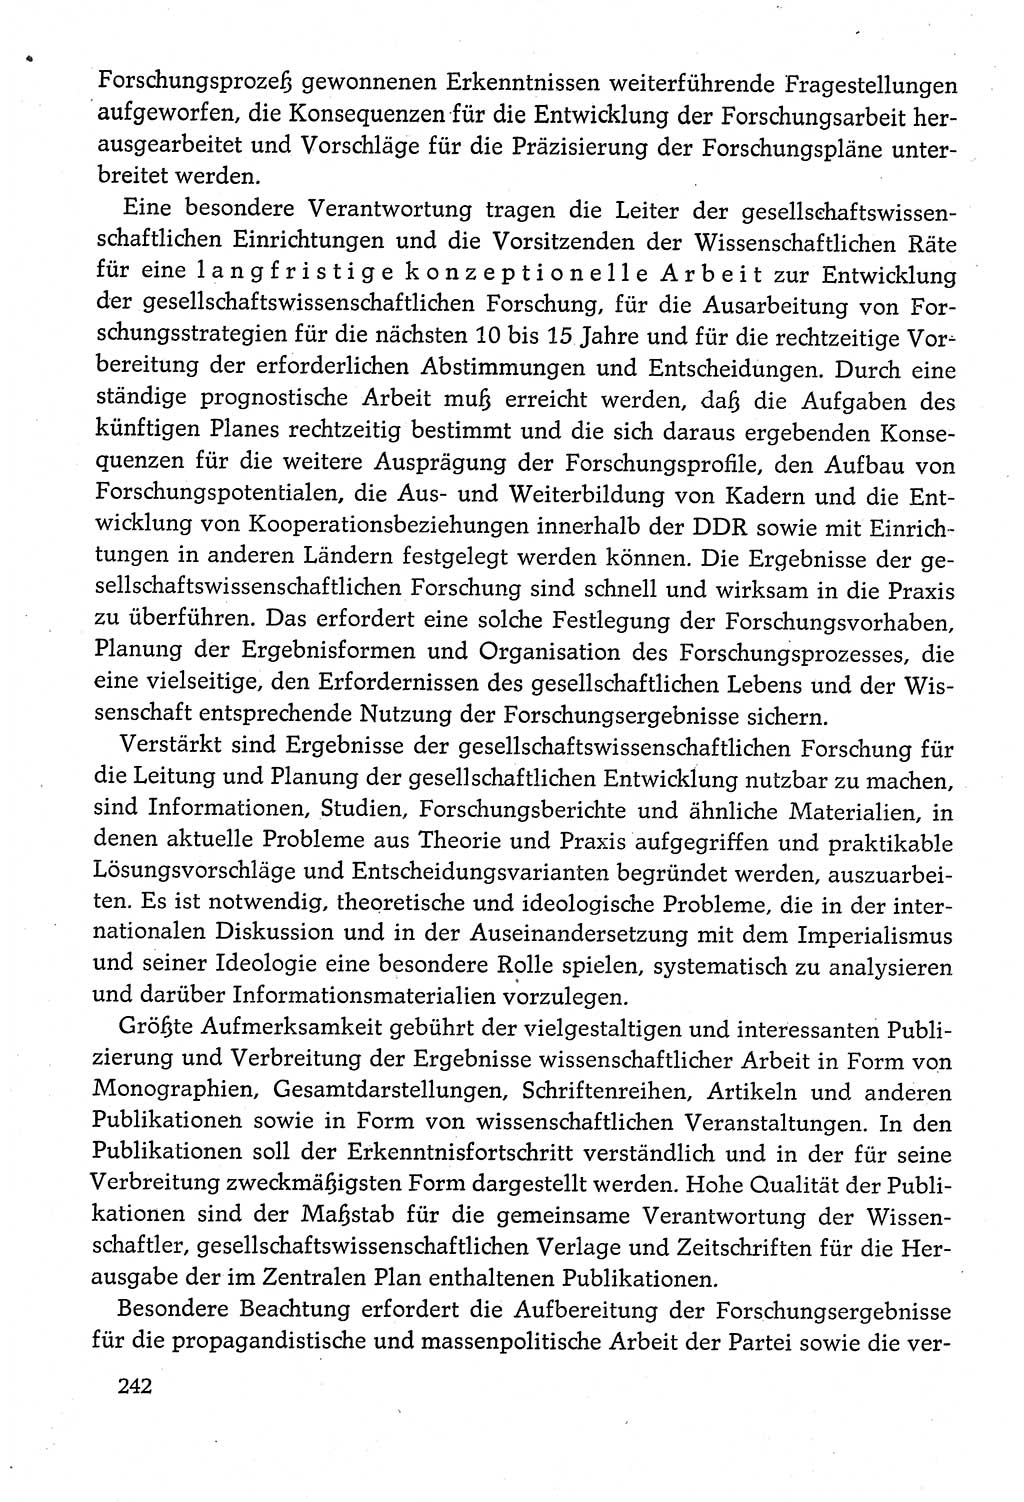 Dokumente der Sozialistischen Einheitspartei Deutschlands (SED) [Deutsche Demokratische Republik (DDR)] 1980-1981, Seite 242 (Dok. SED DDR 1980-1981, S. 242)